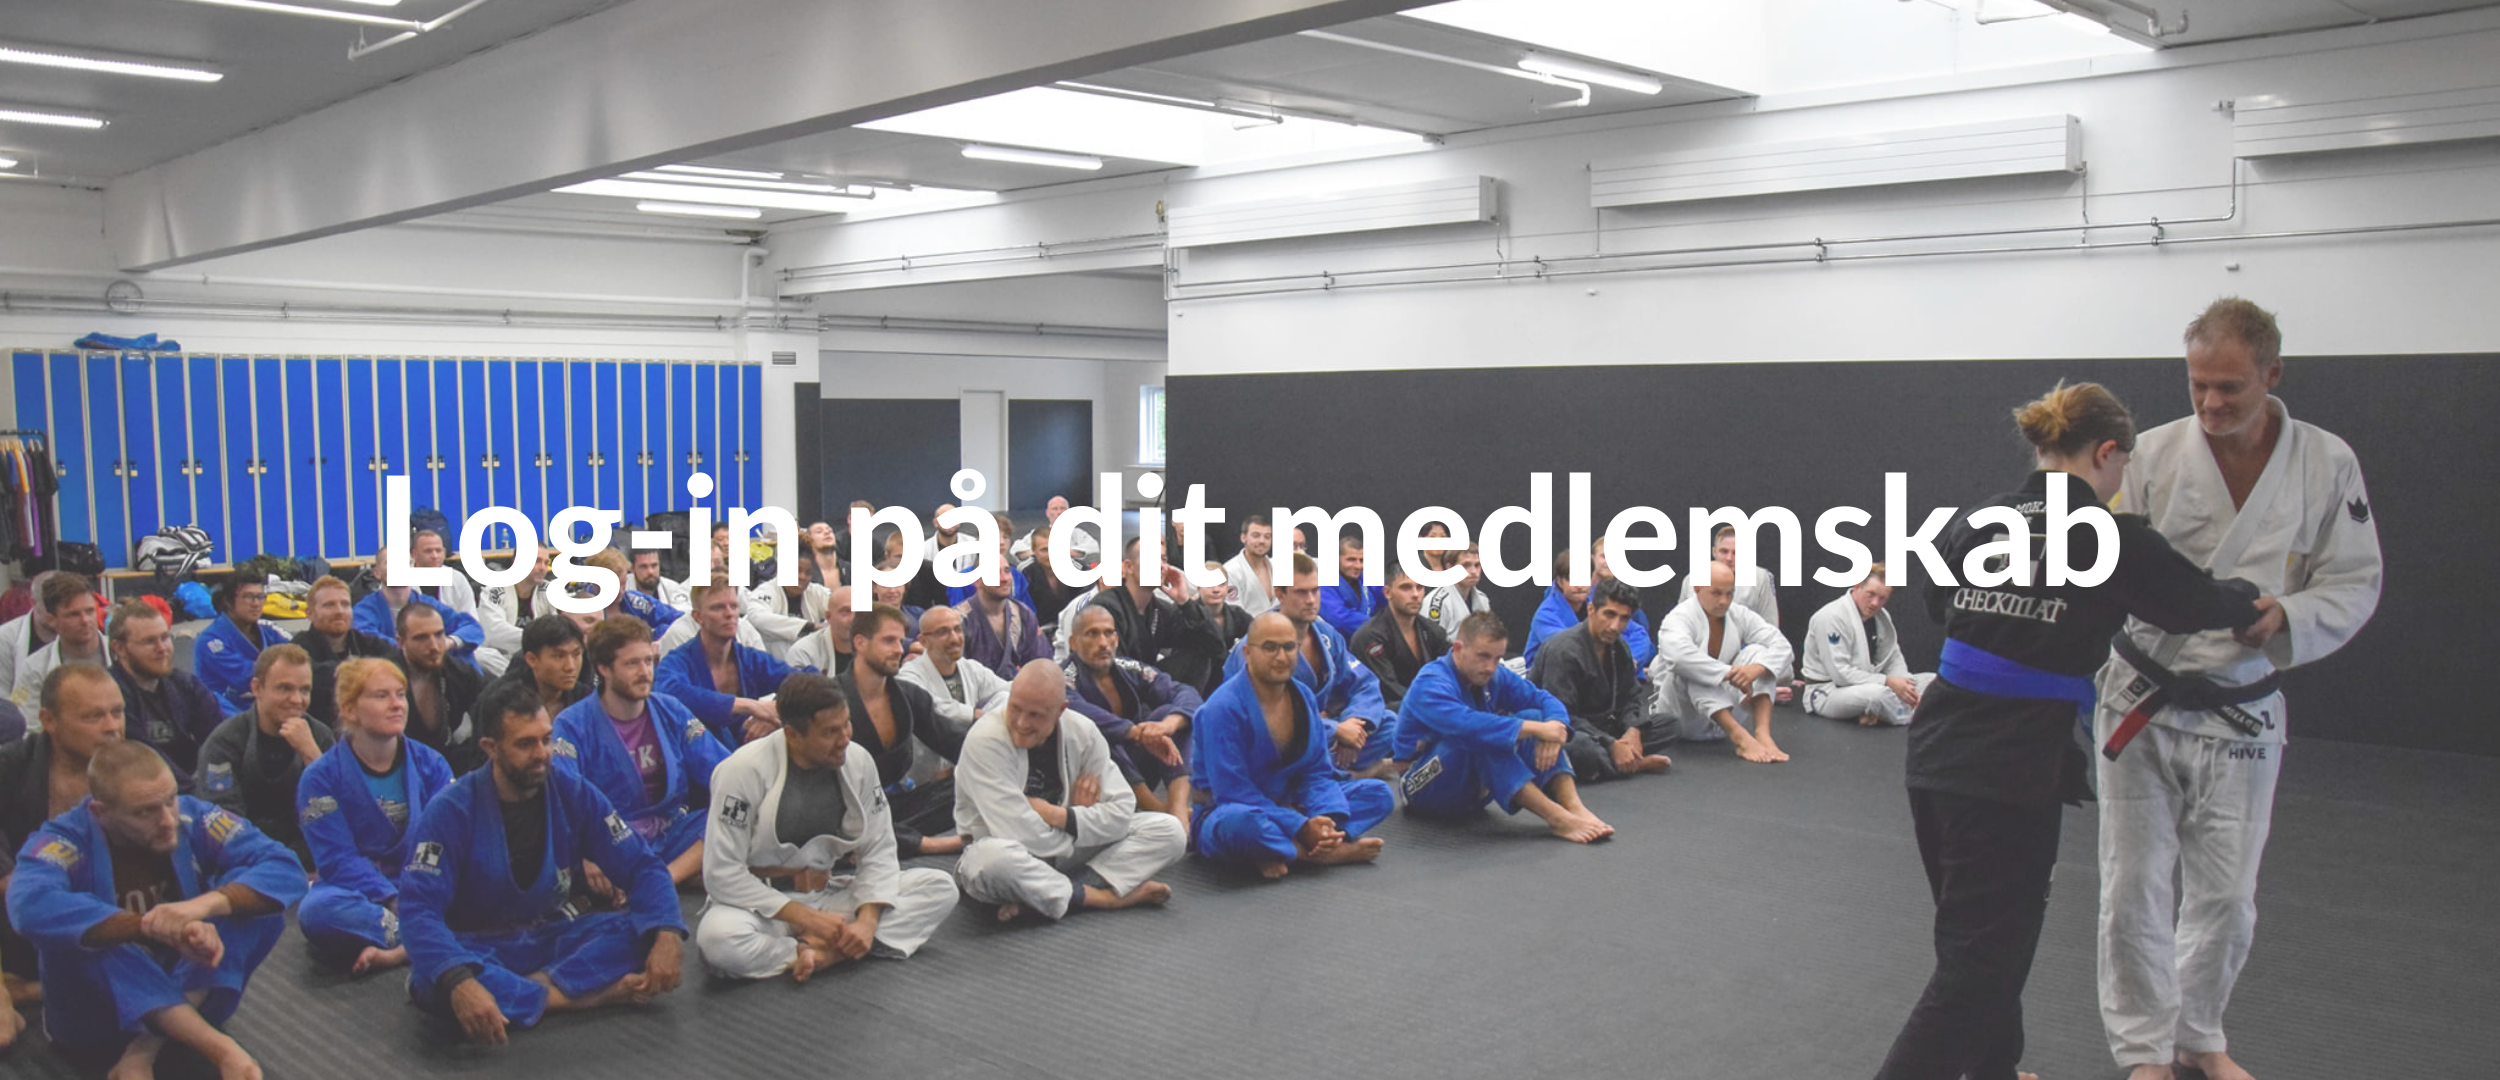 Home - Arte Suave BJJ og MMA i København